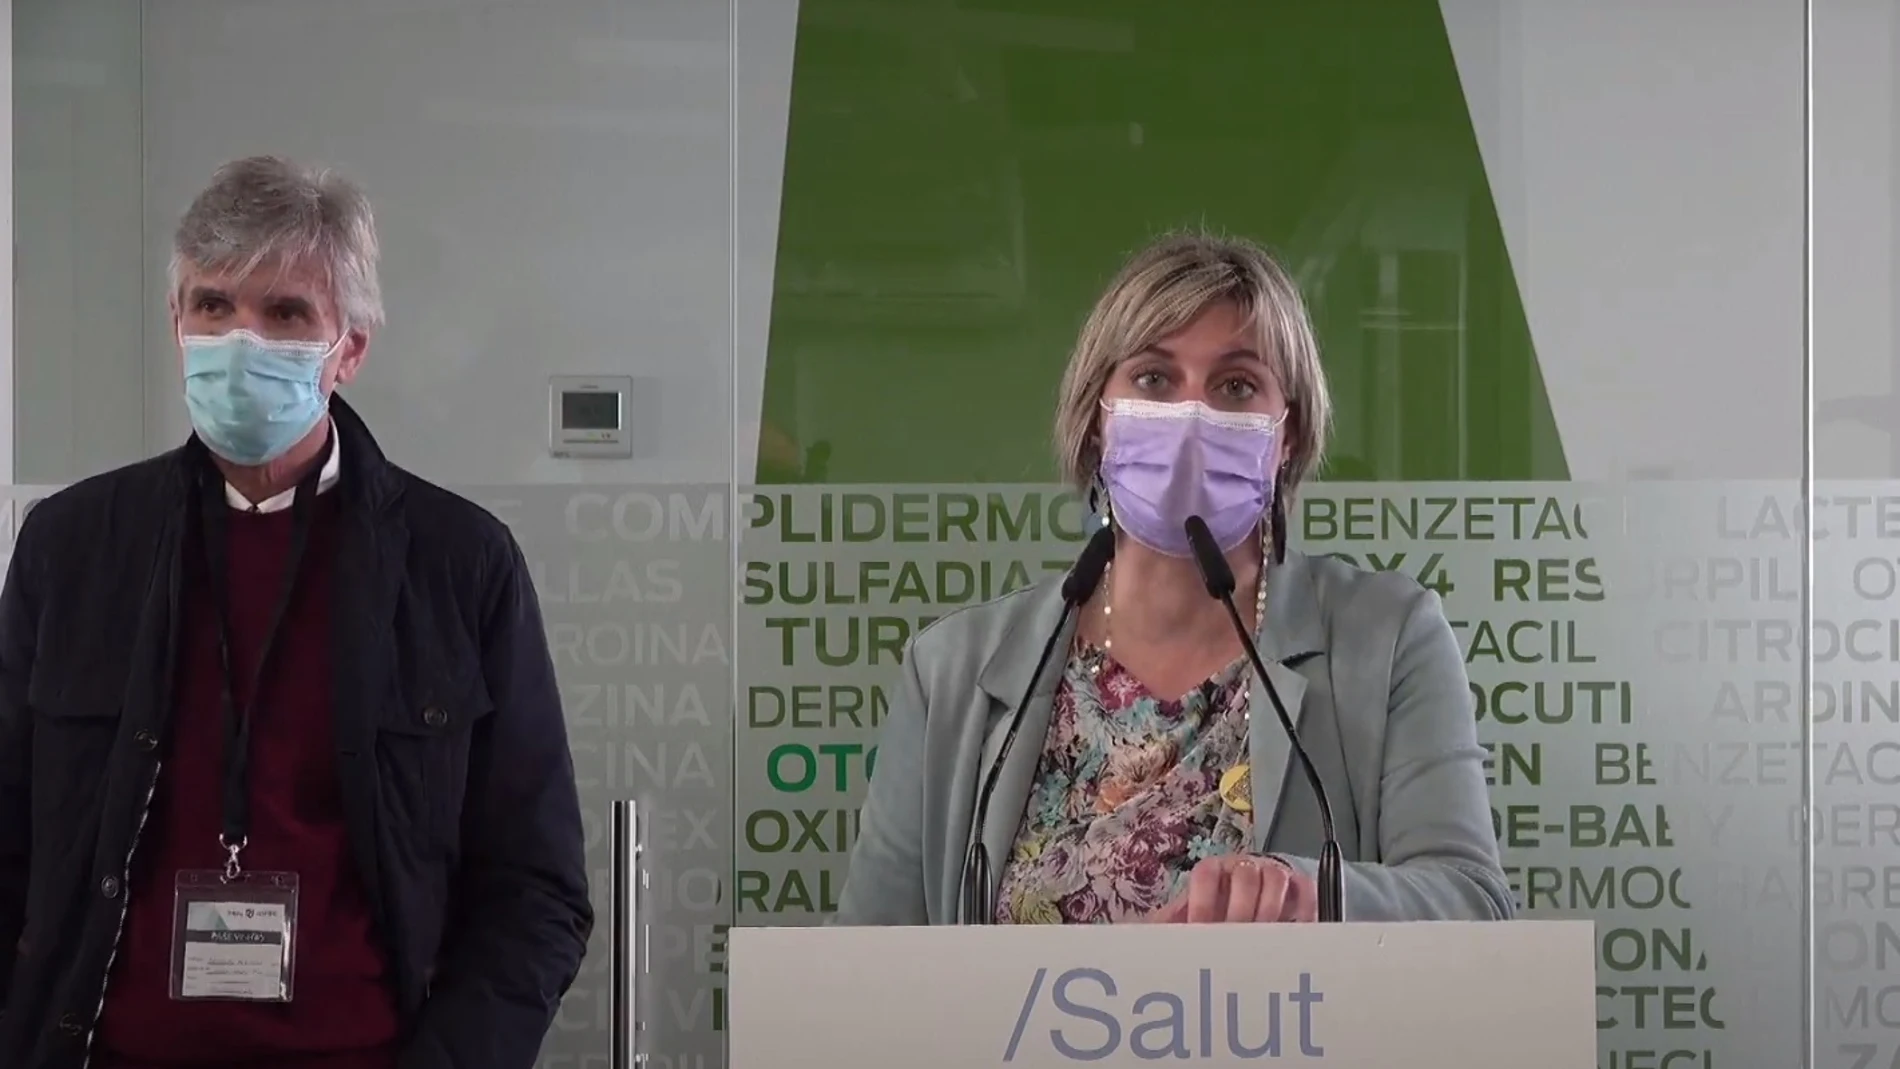 La consellera de Salud de la Generalitat, Alba Vergés, con el secretario de Salud Pública de la Generalitat, Josep Maria Argimon, en rueda de prensa en los laboratorios de Reig-Jofre en Sant Joan Despí (Barcelona).CONSELLERIA DE SALUD DE LA GENER06/02/2021